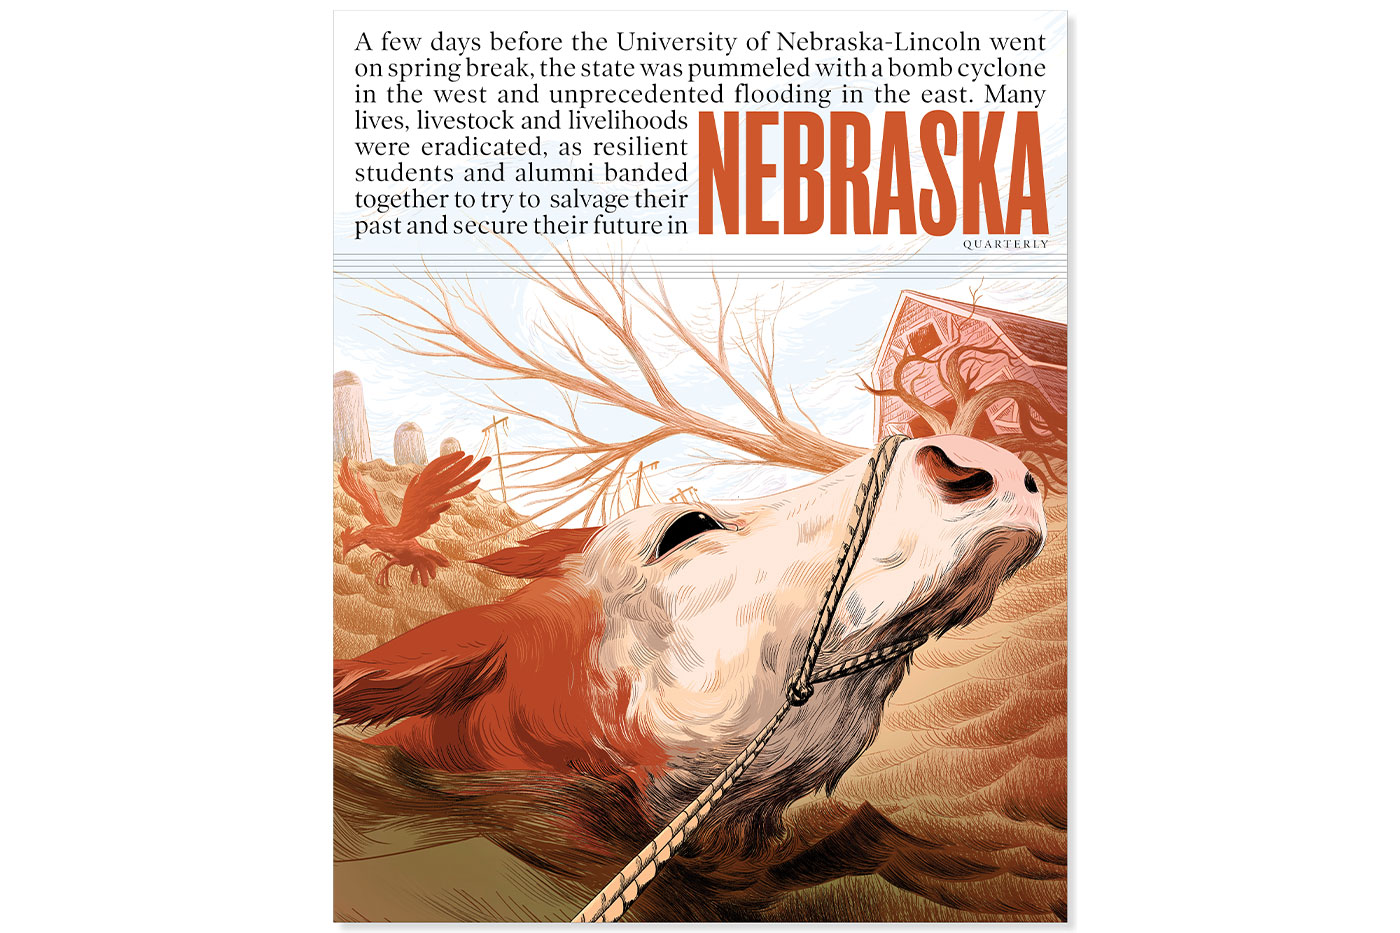 Nebraska Quarterly, Summer 2019